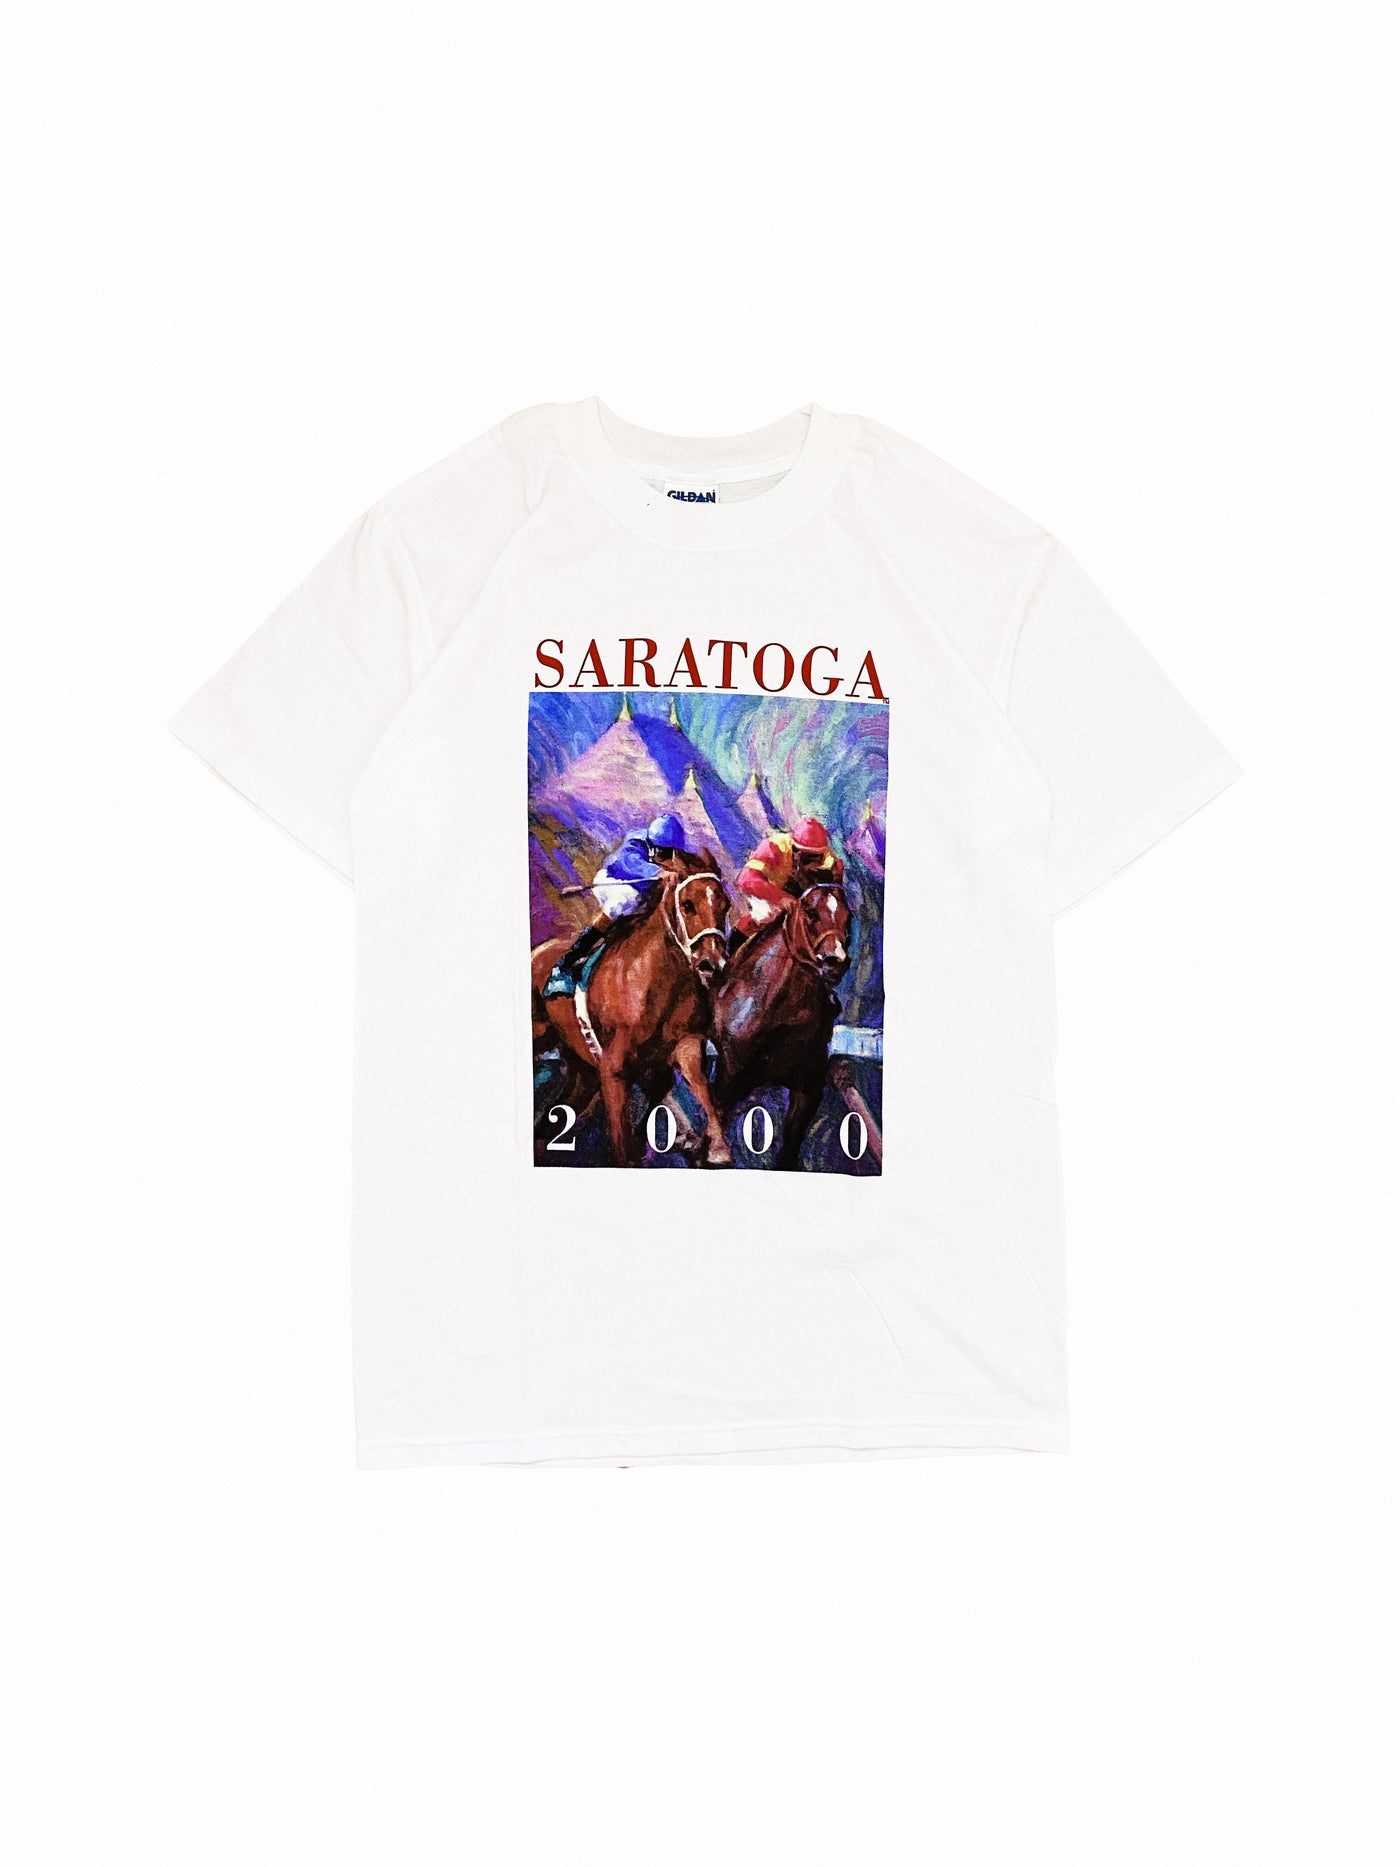 Vintage 2000 Saratoga Race Course T-Shirt